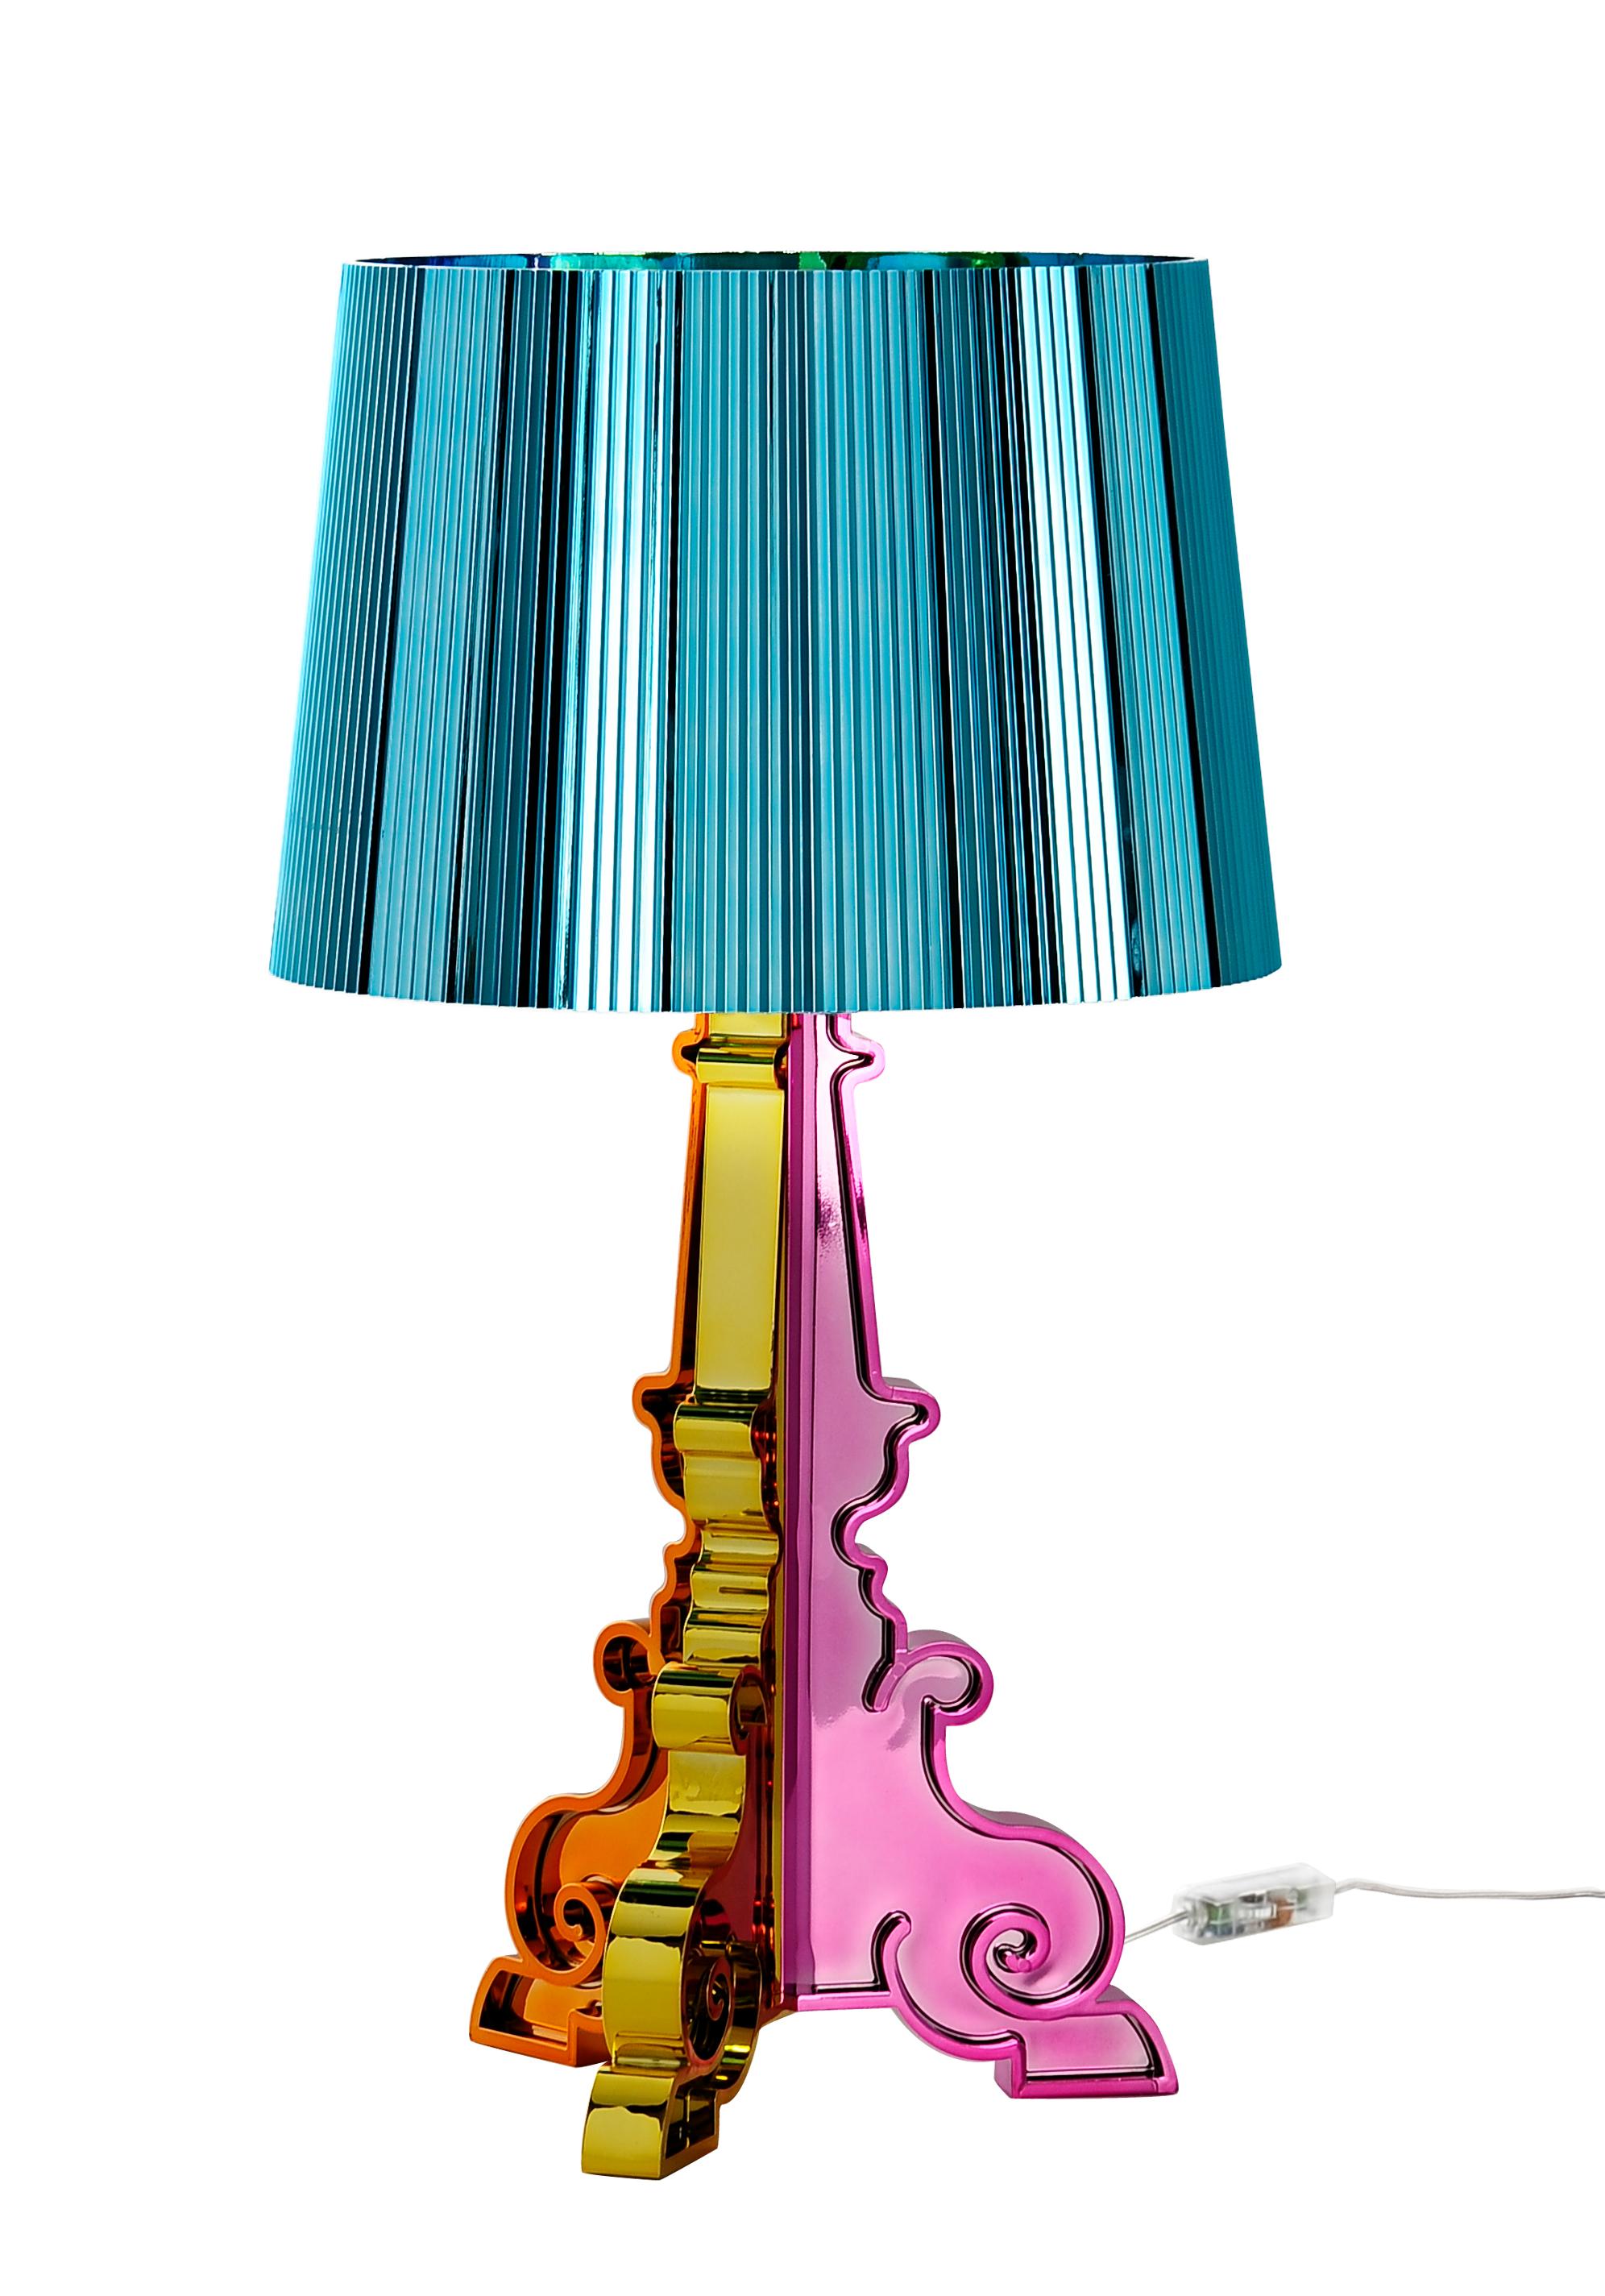 Italian Kartell Bourgie Lamp in Multicolored Blue by Ferruccio Laviani For Sale